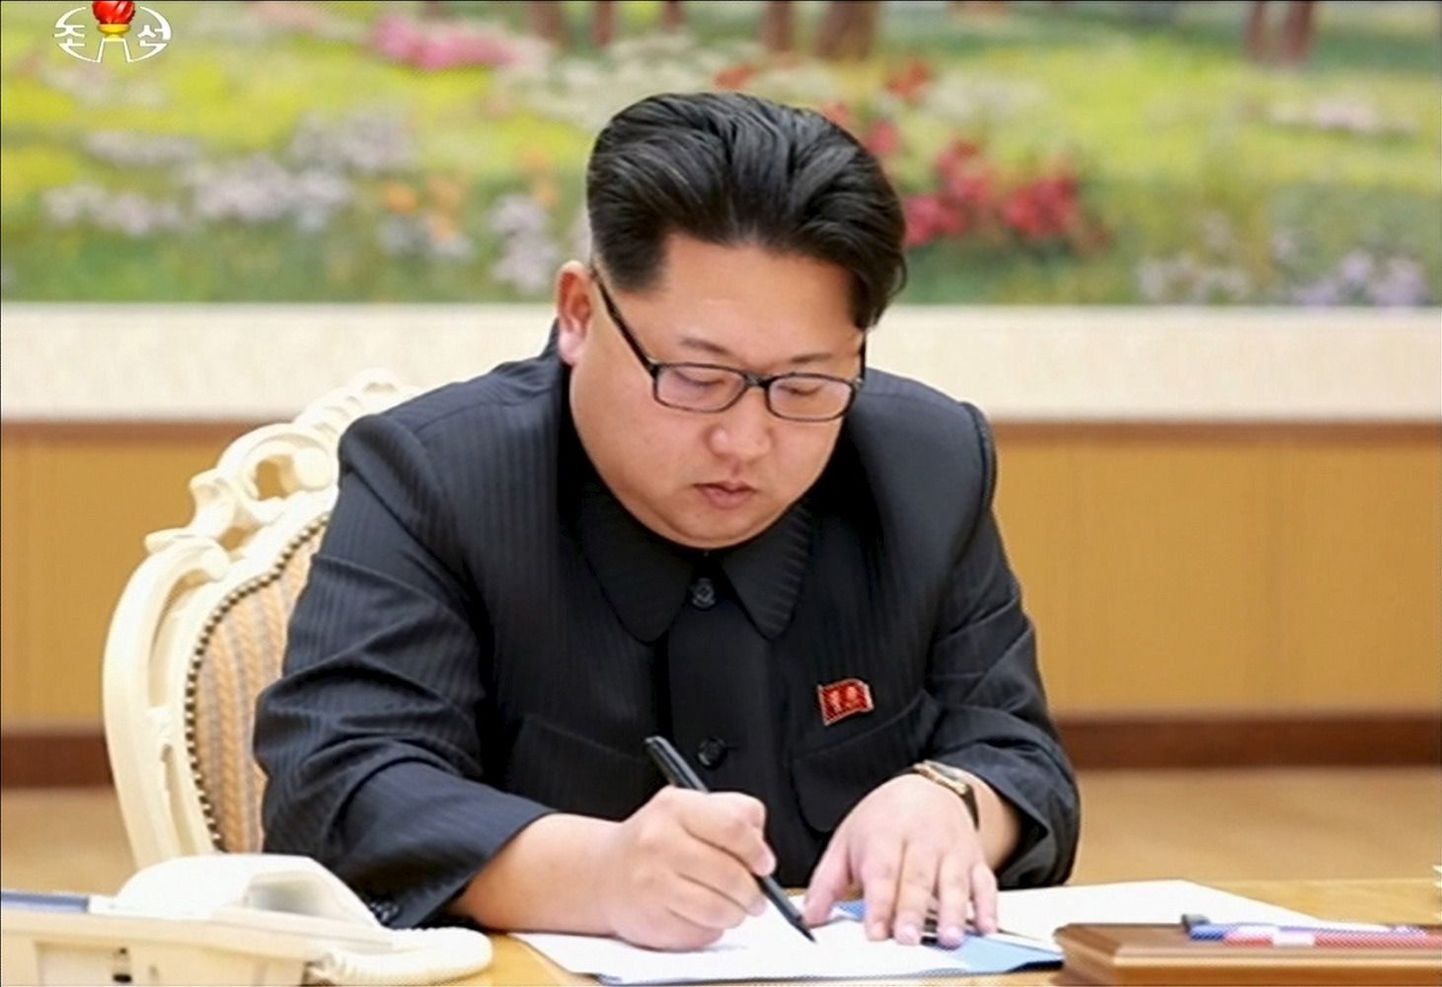 Põhja-Korea juht Kim Jong-un kirjutamas alla dokumendile, mis puudutab väidetavalt riigi esimest vesinikpommi katsetust.